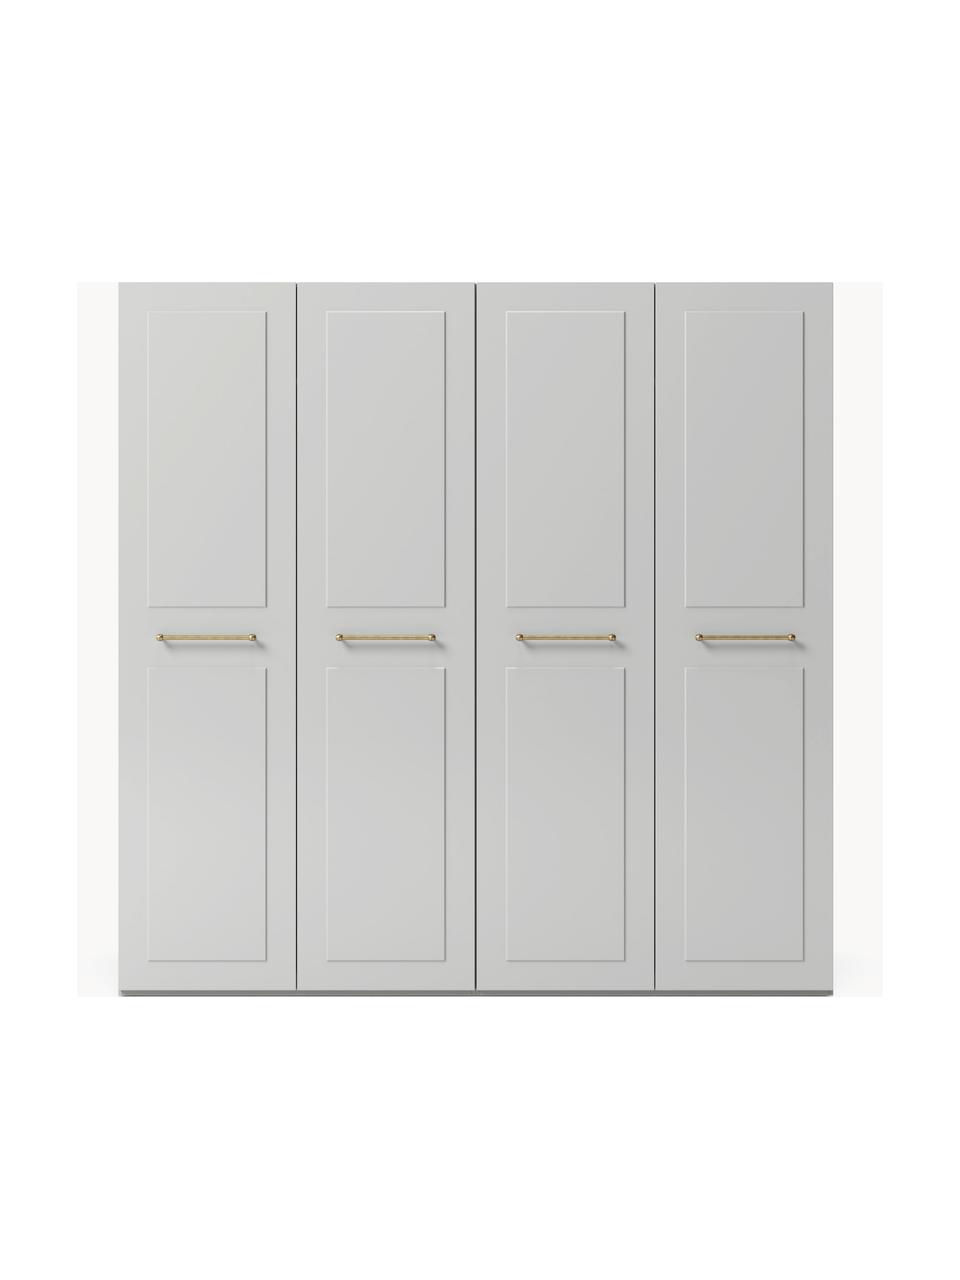 Szafa modułowa Charlotte, 4-drzwiowa, różne warianty, Korpus: płyta wiórowa z certyfika, Szary, S 200 x W 200 cm, Basic